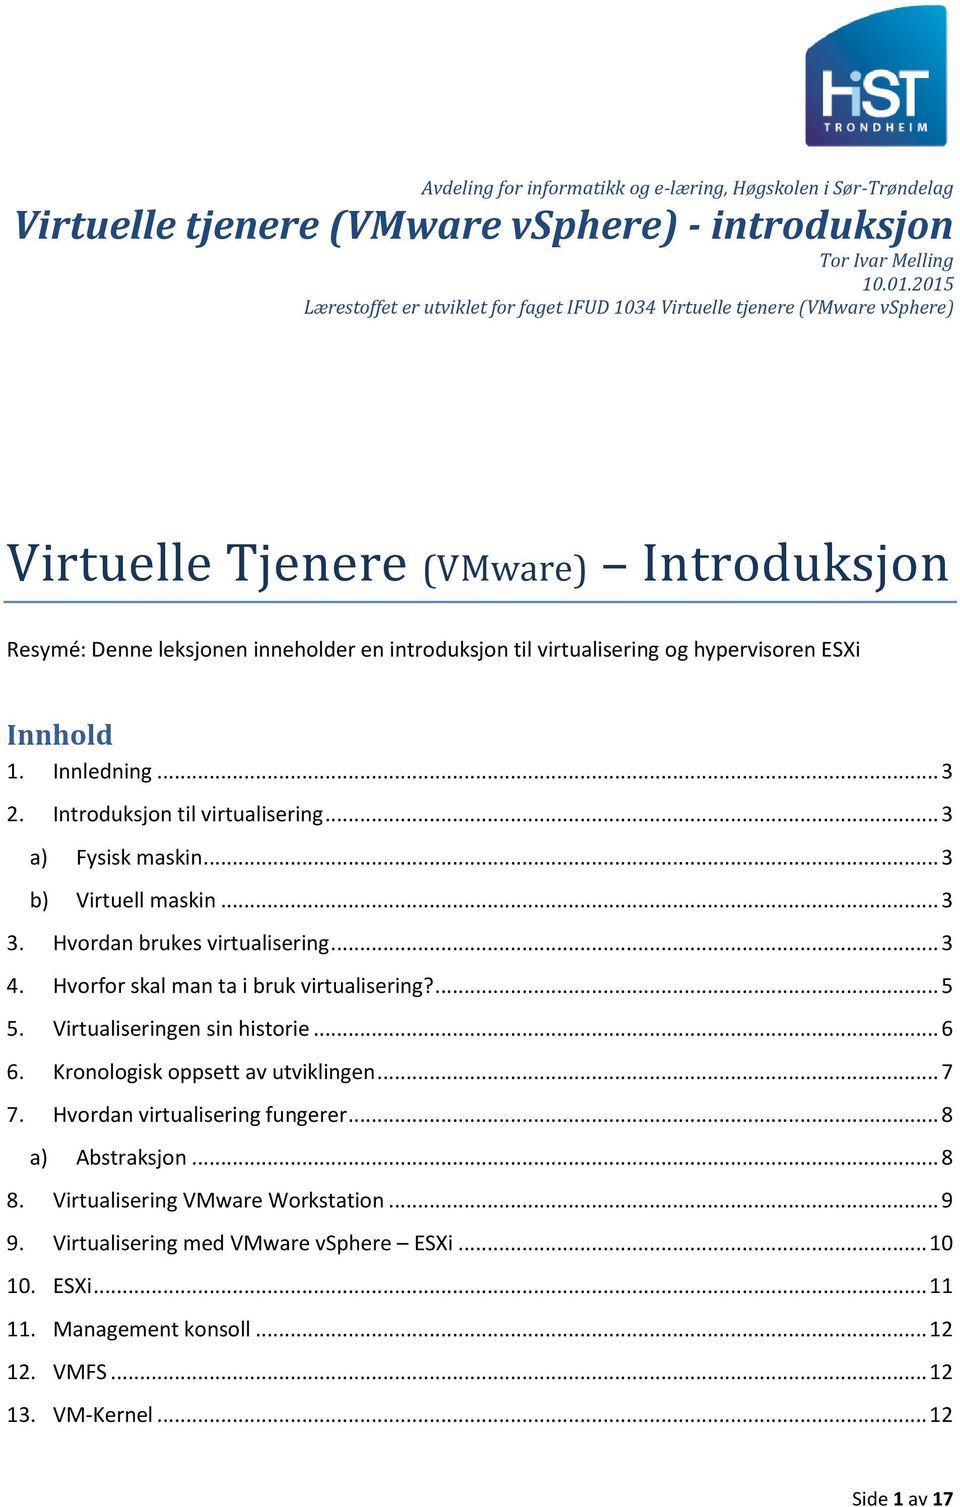 hypervisoren ESXi Innhold 1. Innledning... 3 2. Introduksjon til virtualisering... 3 a) Fysisk maskin... 3 b) Virtuell maskin... 3 3. Hvordan brukes virtualisering... 3 4.